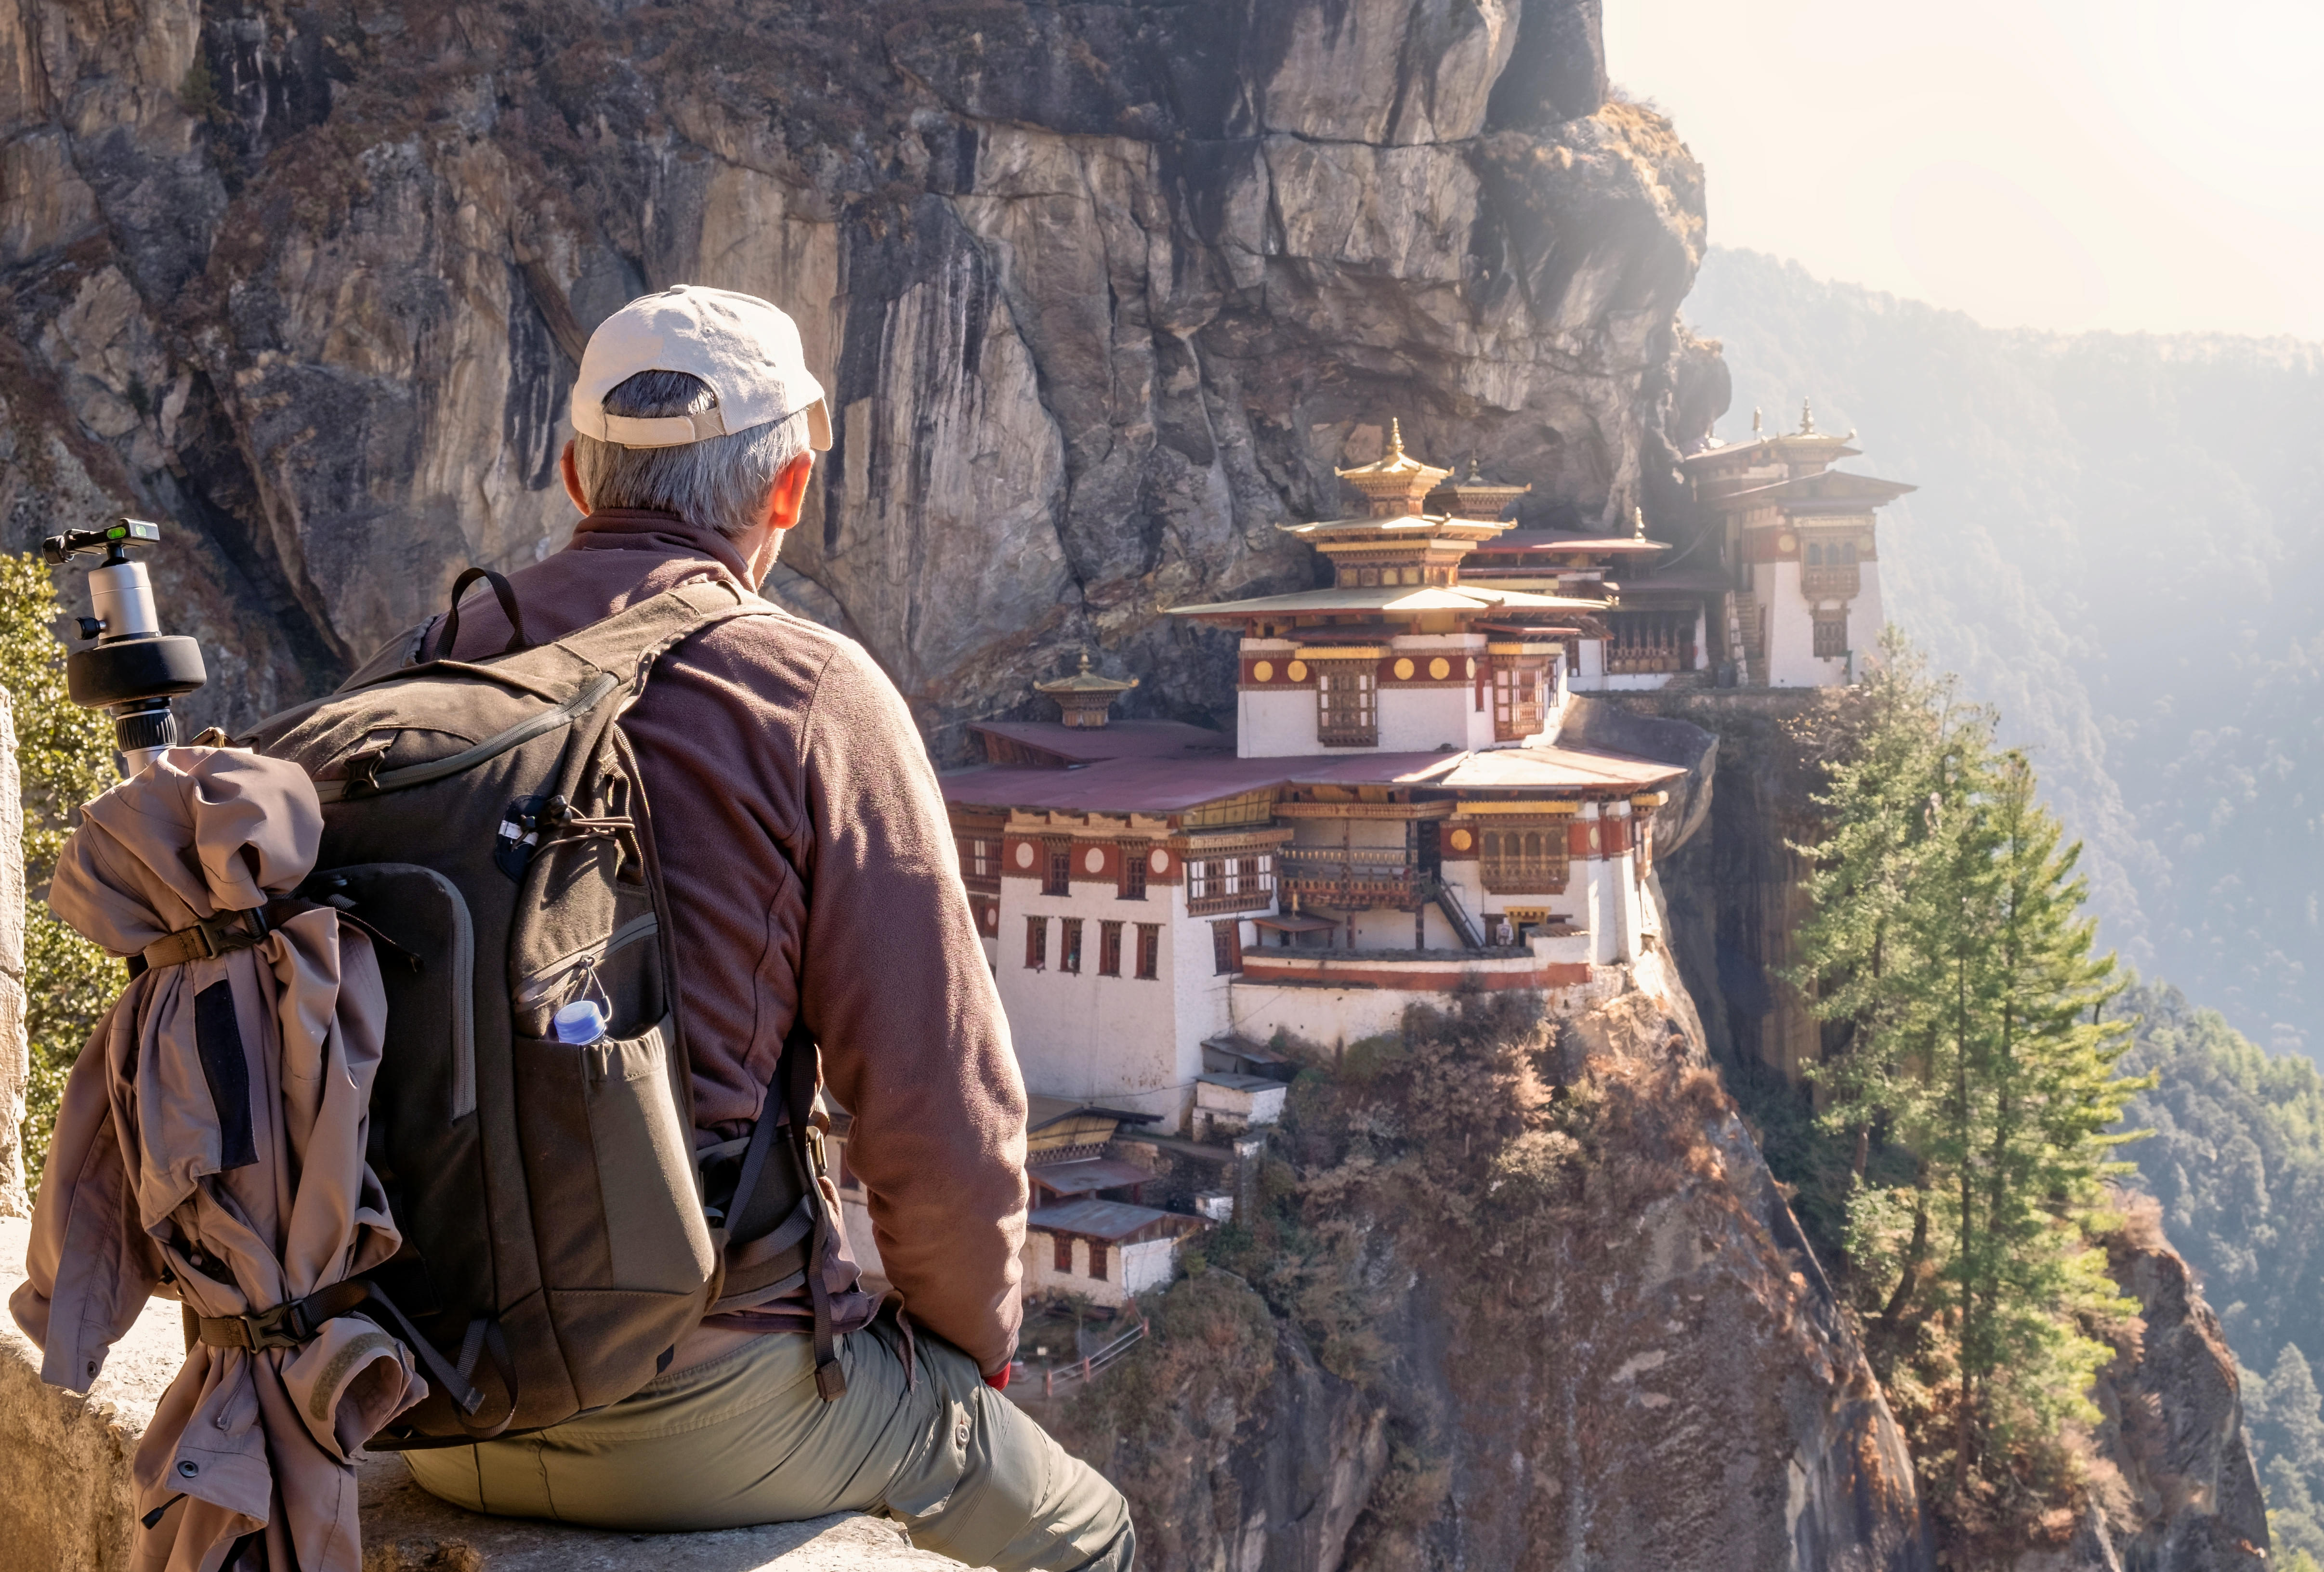 Gems of Bhutan | Thimphu Punakha & Paro